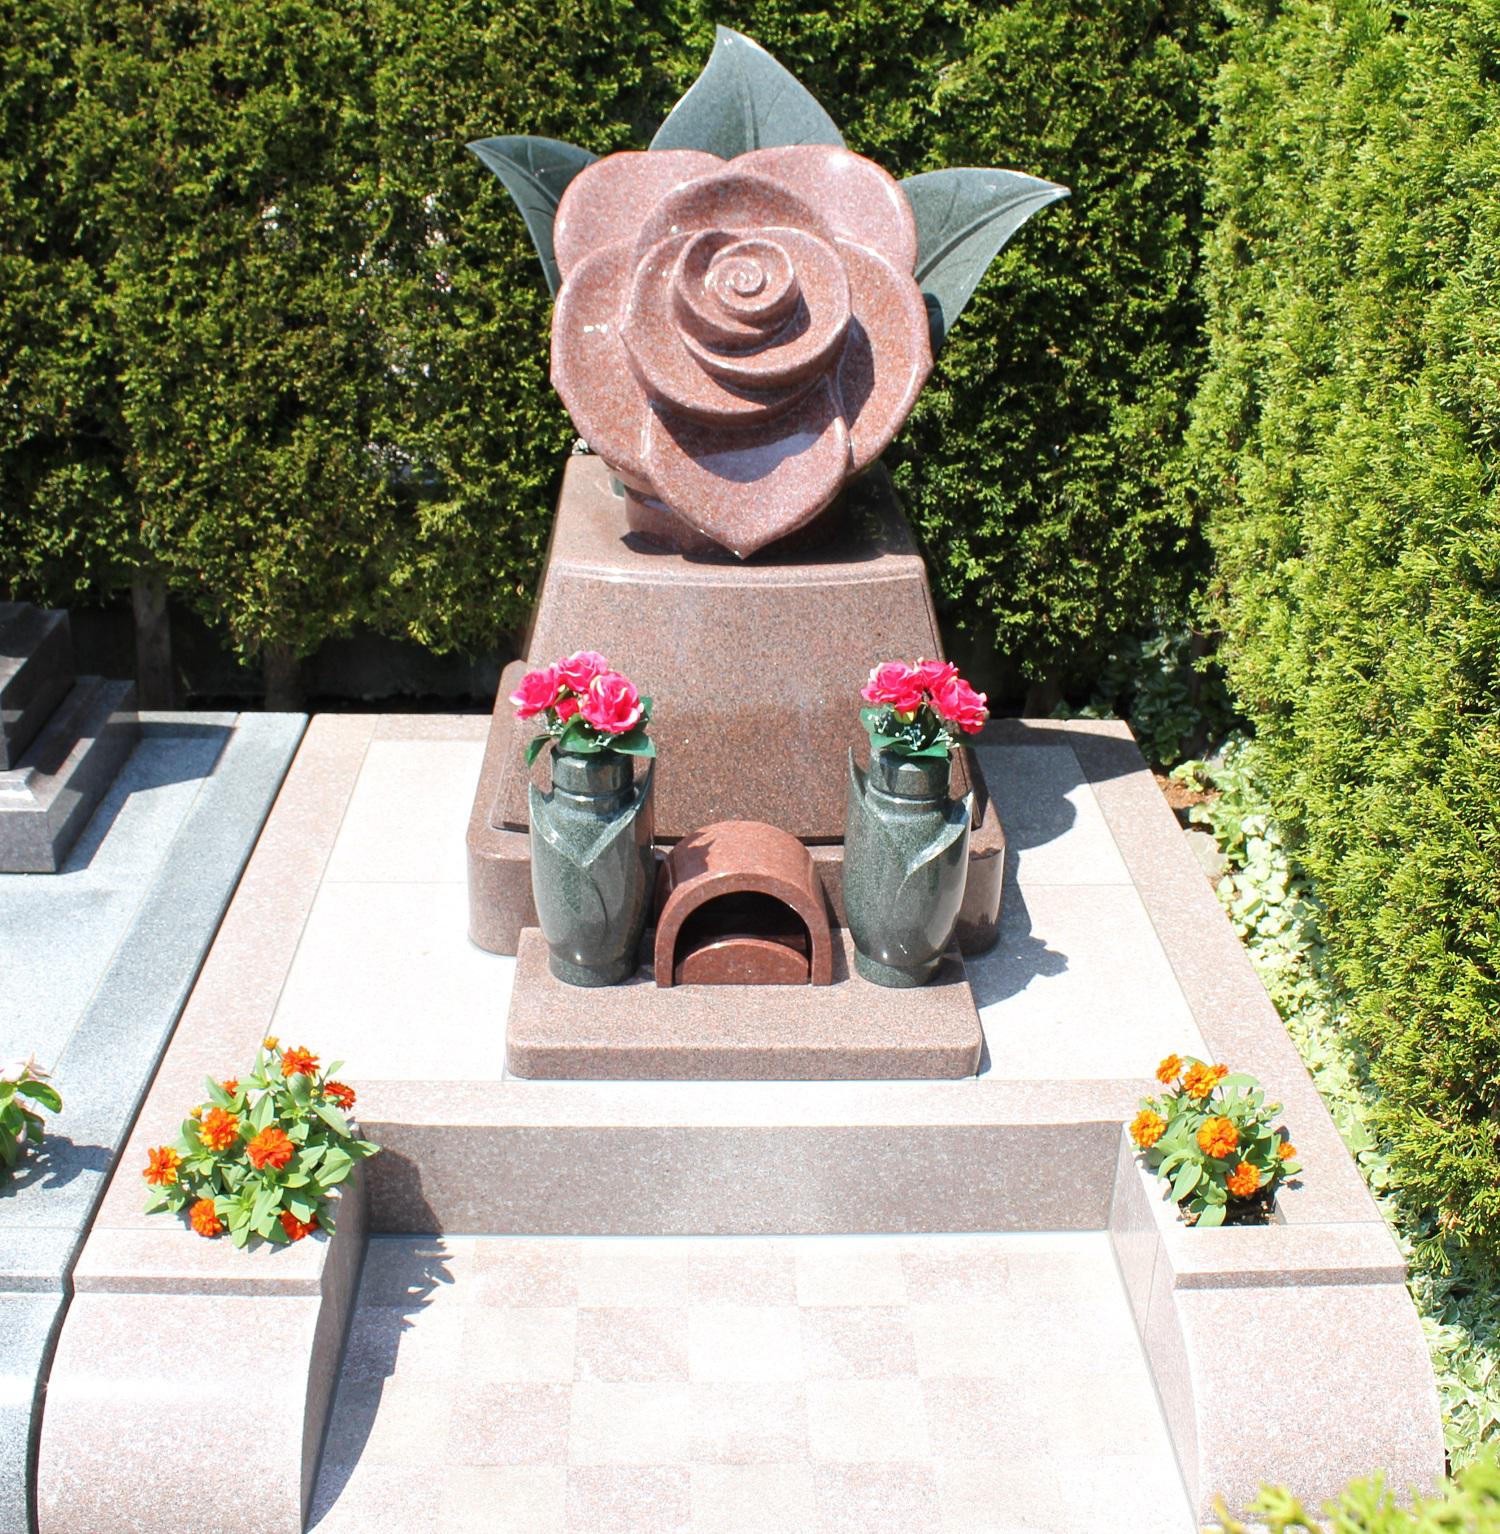 デザイン墓石の雰囲気に最適な公園墓地 エンゼルパーク ブログ 公式 エンゼルパーク 長野県上田市 花と緑に囲まれた公園墓地